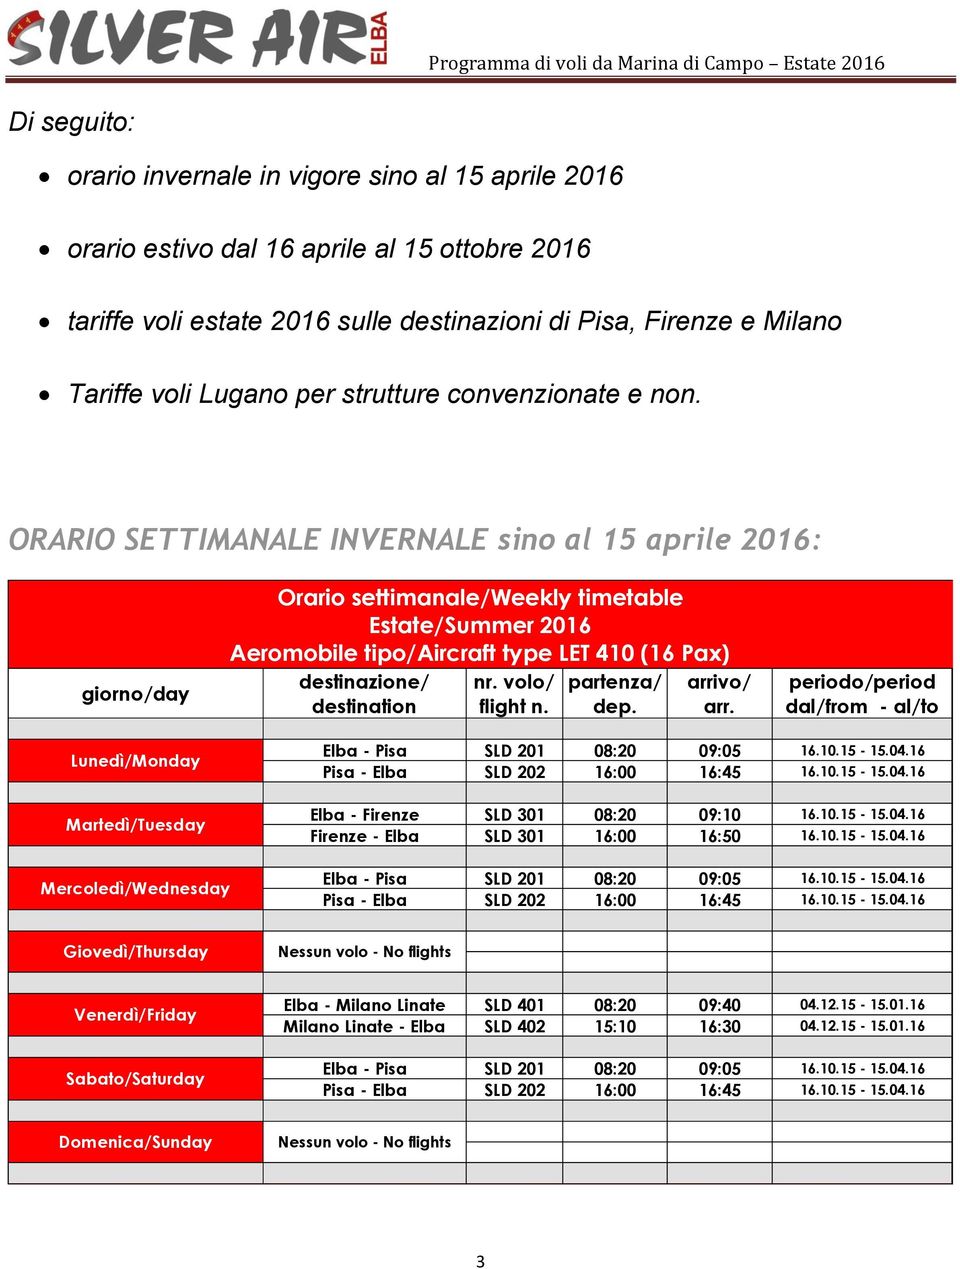 ORARIO SETTIMANALE INVERNALE sino al 15 aprile 2016: giorno/day Orario settimanale/weekly timetable Estate/Summer 2016 Aeromobile tipo/aircraft type LET 410 (16 Pax) destinazione/ nr.